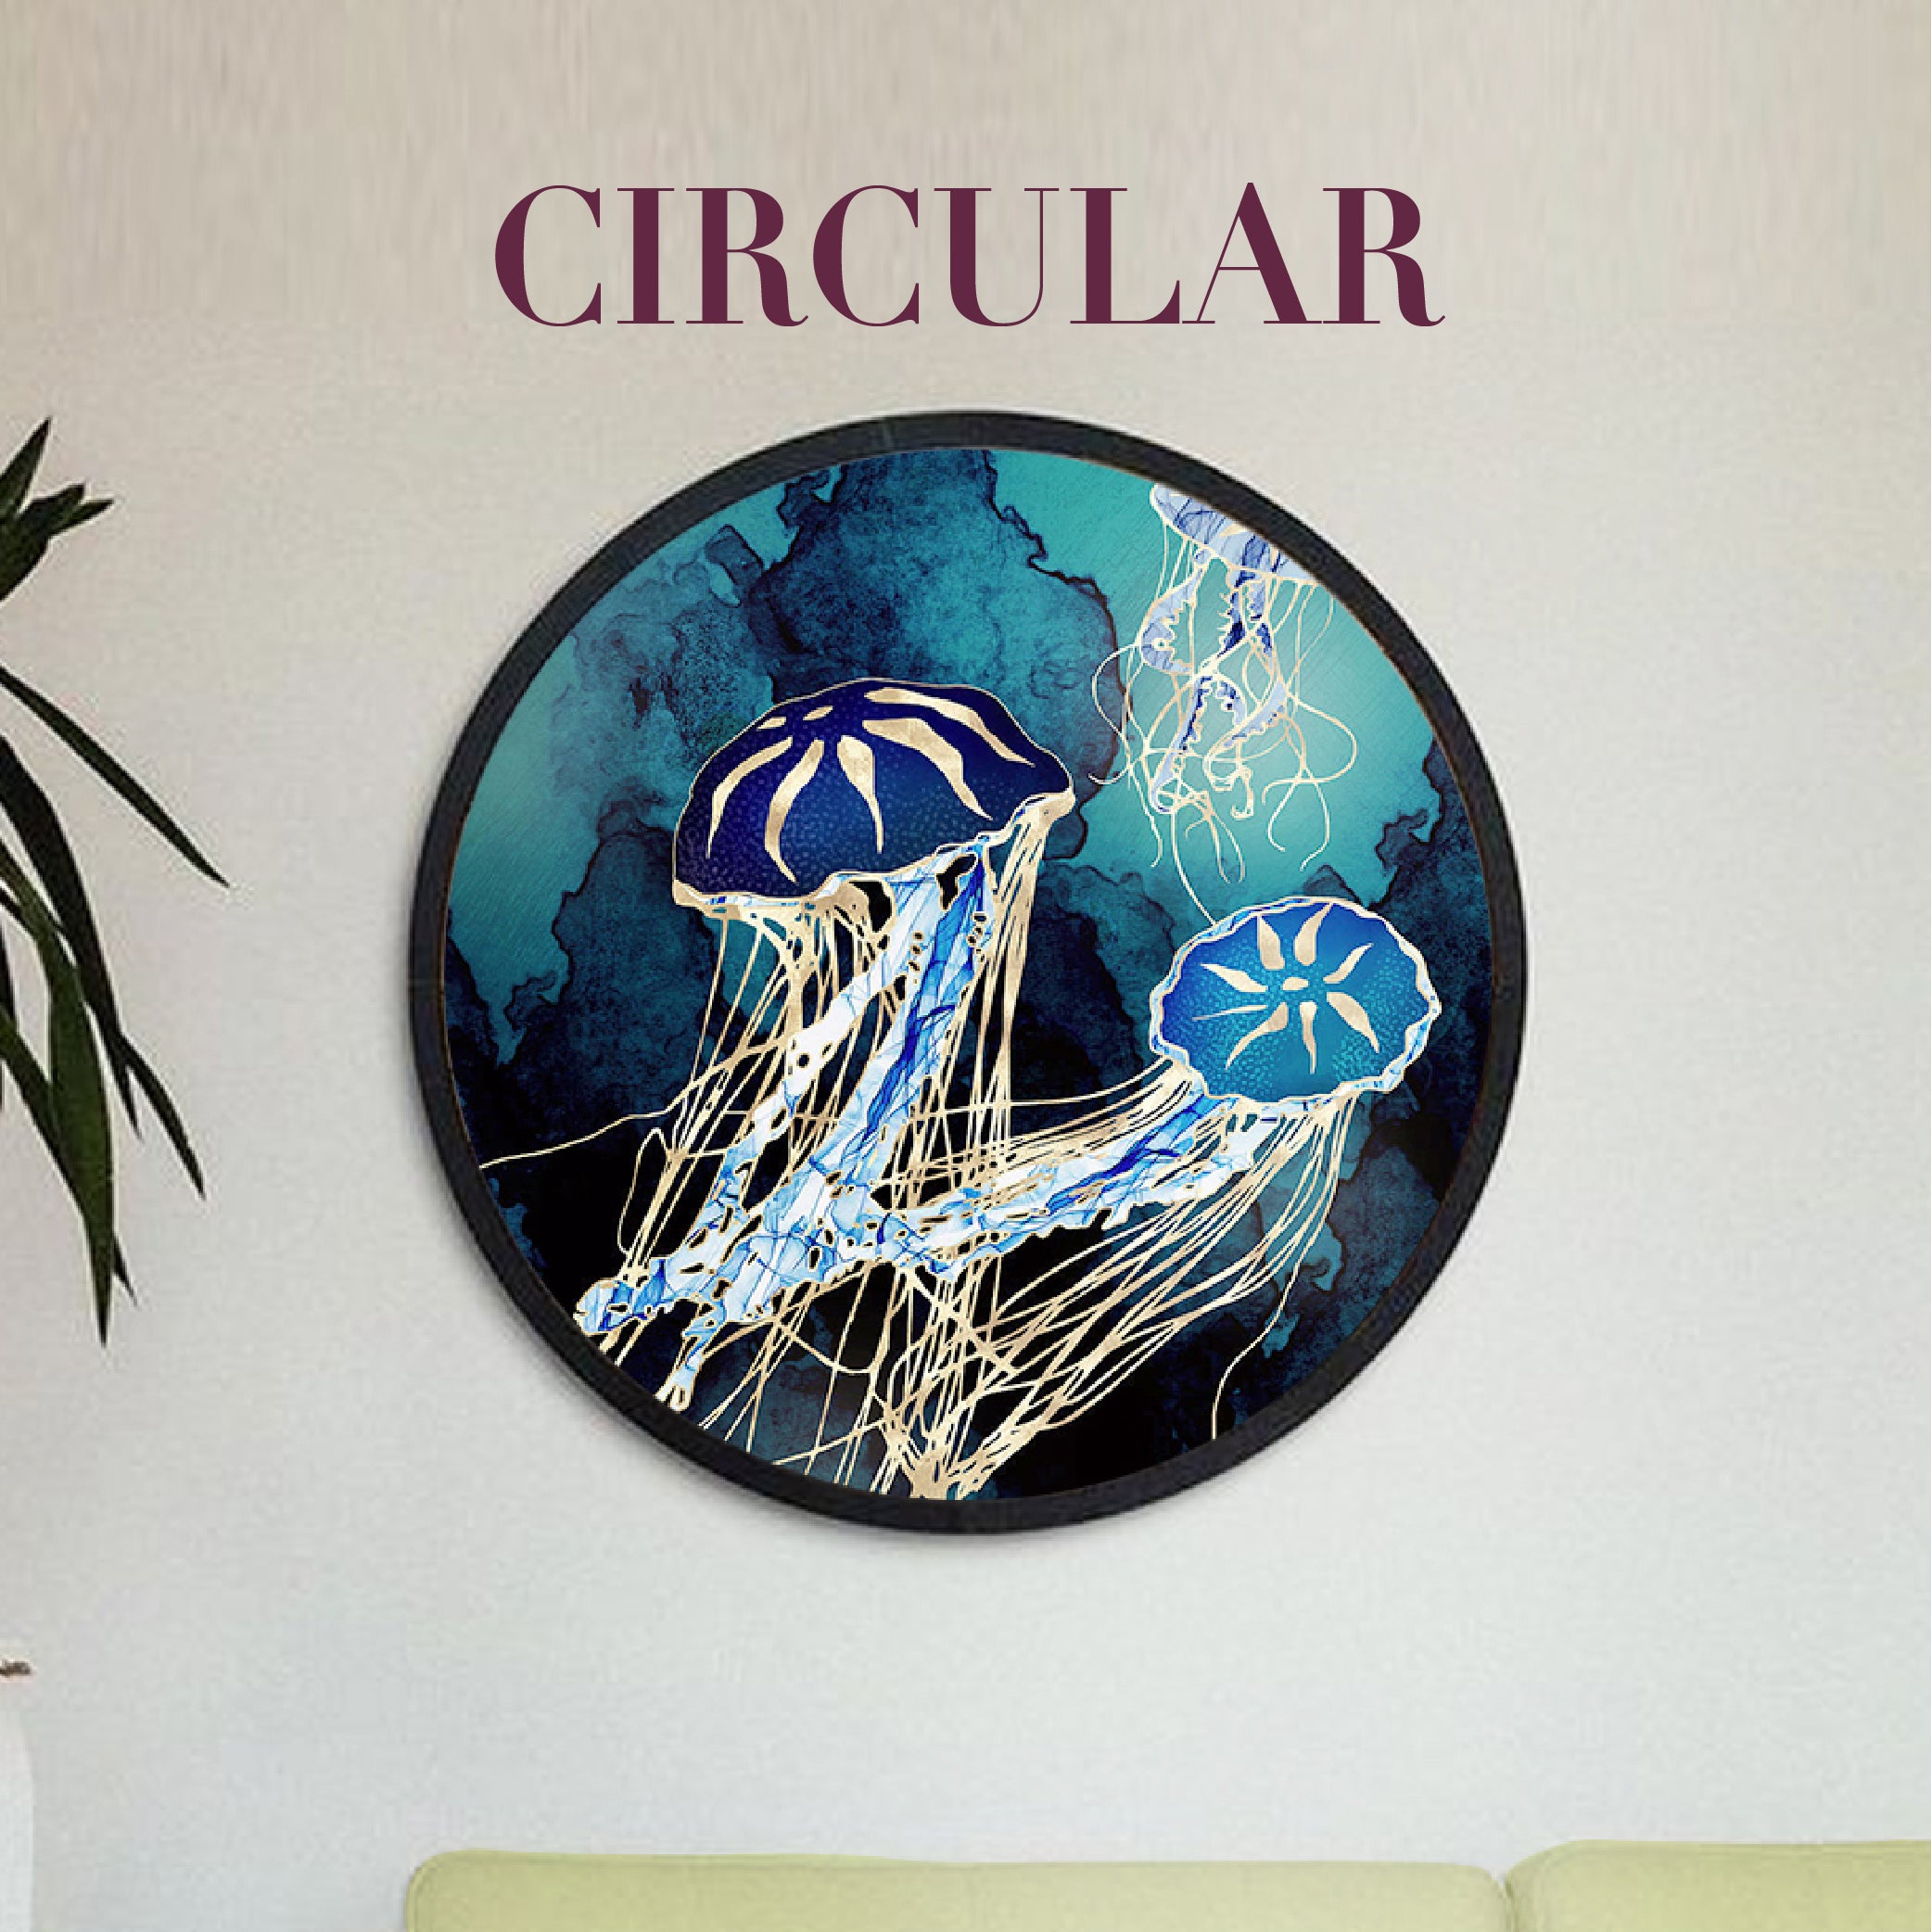 Circular Canvas